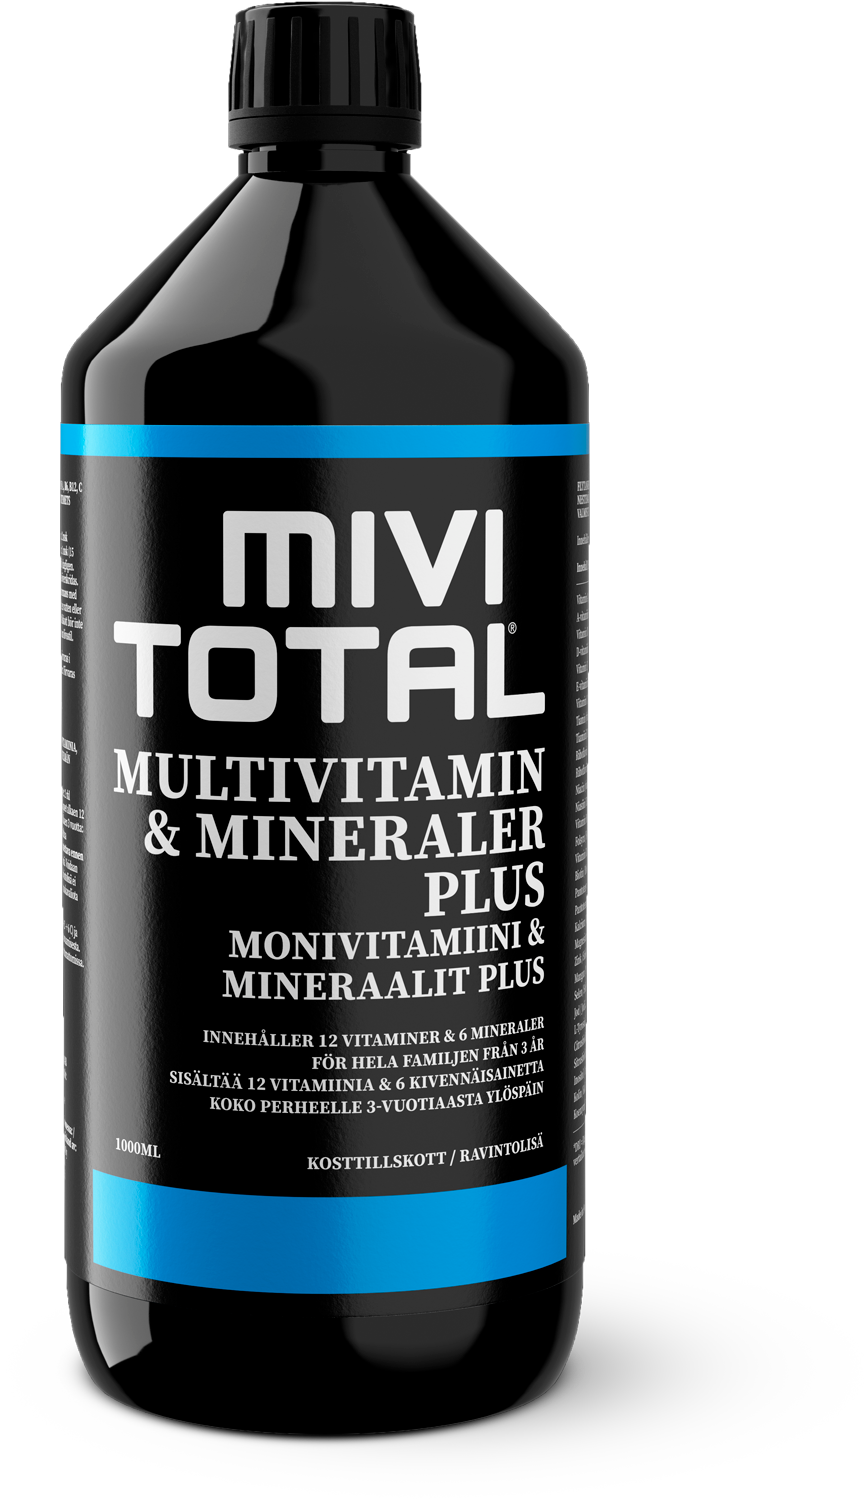 Mivitotal Plus 1000 ml